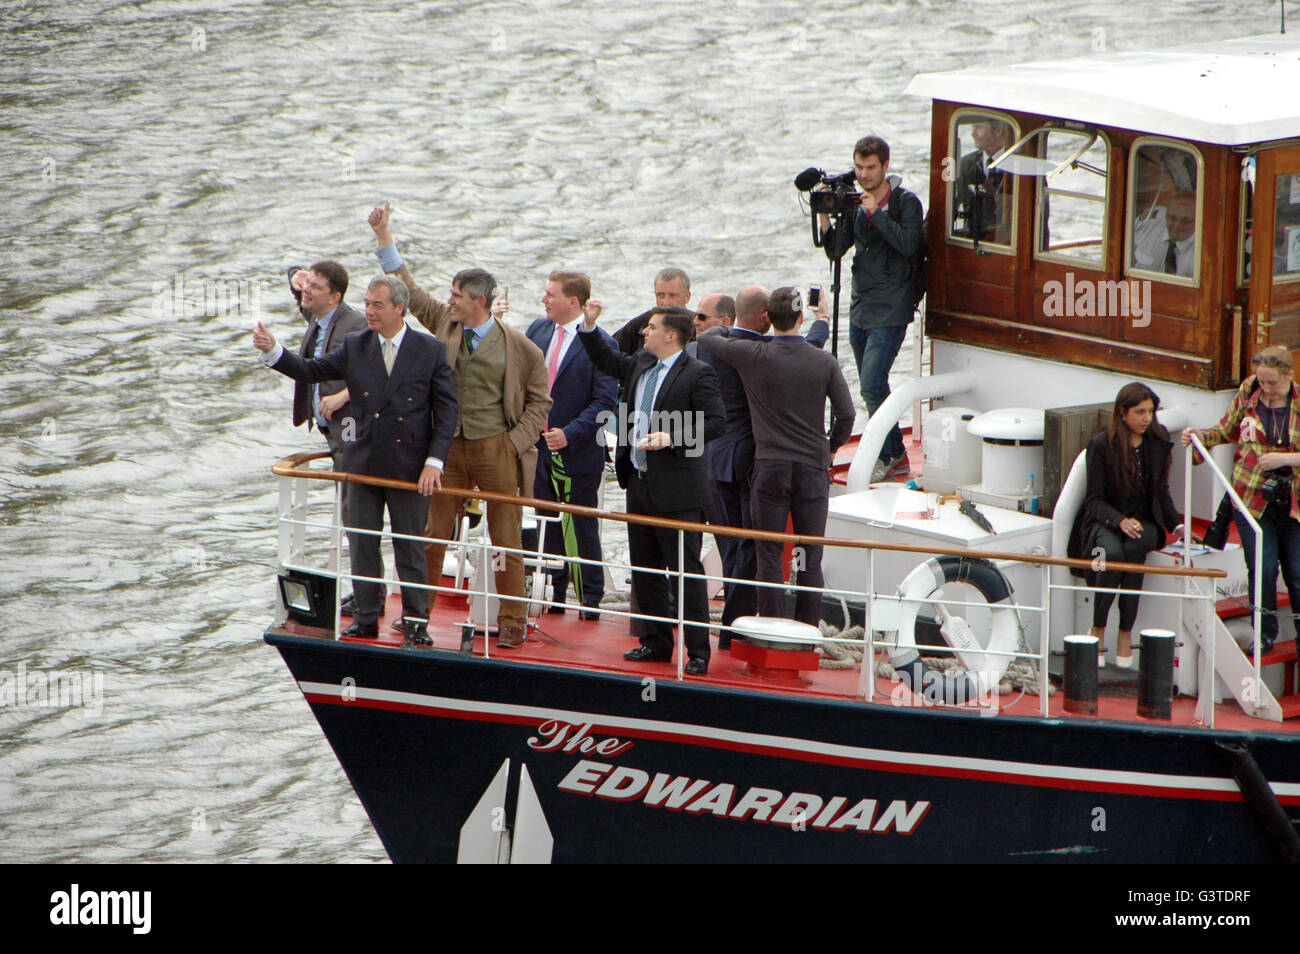 London, UK. 15. Juni 2016. UKIP Führer Nigel Farage bringt Fischereiflotte in den Houses of Parliament, Urlaub Kampagne für das EU-Referendum zu unterstützen. Bildnachweis: JOHNNY ARMSTEAD/Alamy Live-Nachrichten Stockfoto